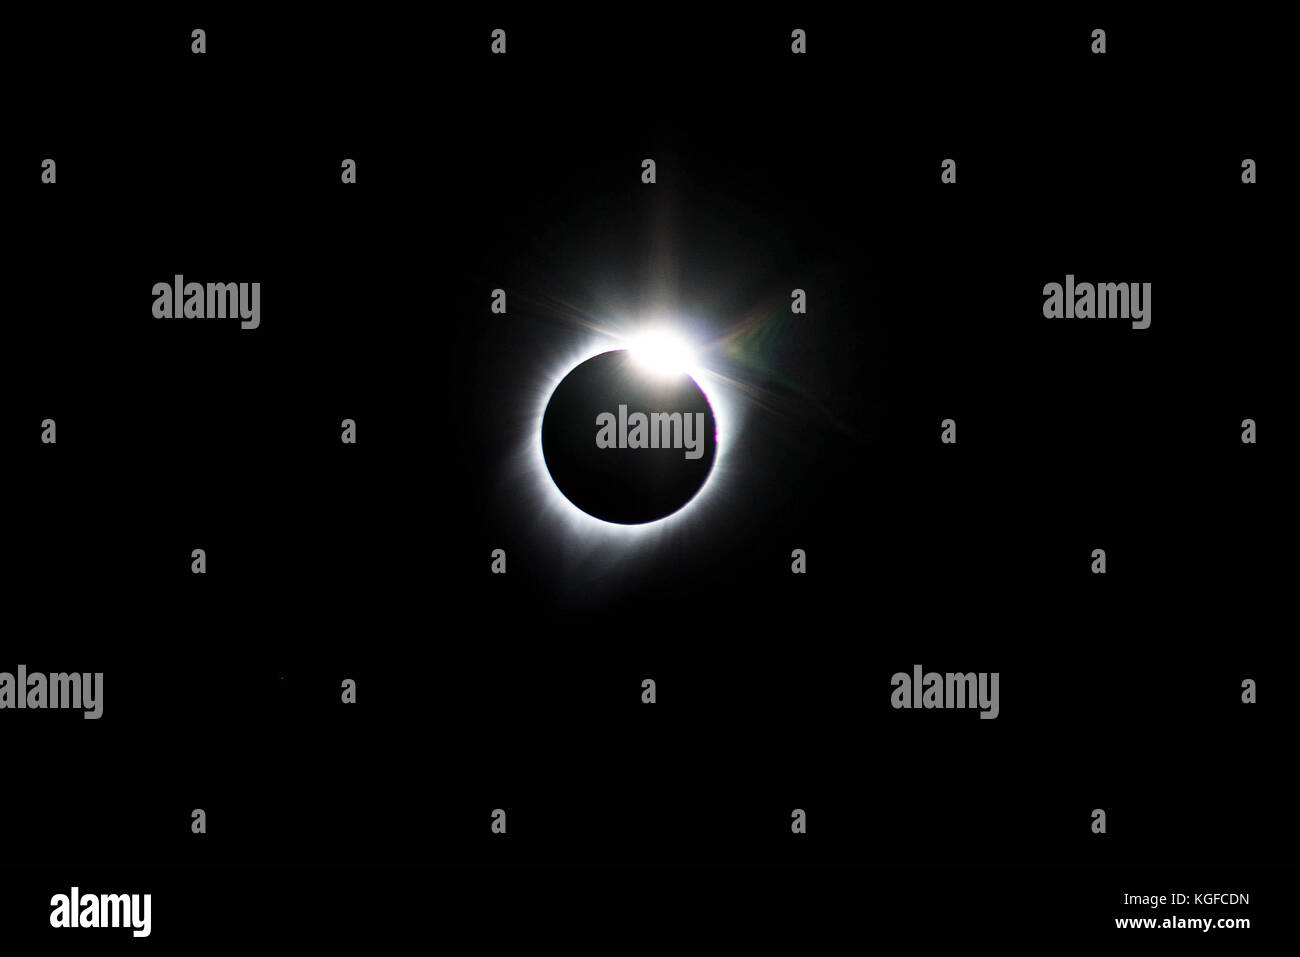 Jackson, Wyoming, USA. Août 21, 2017. Lors d'une éclipse totale il y a plusieurs phases avant et après avoir atteint la totalité. ici, vu environ 10-15 secondes après la totalité, la couronne solaire devient visible, la création de ce qui est appelé l'anneau de diamant. crédit : deleigh hermes/zuma/Alamy fil live news Banque D'Images